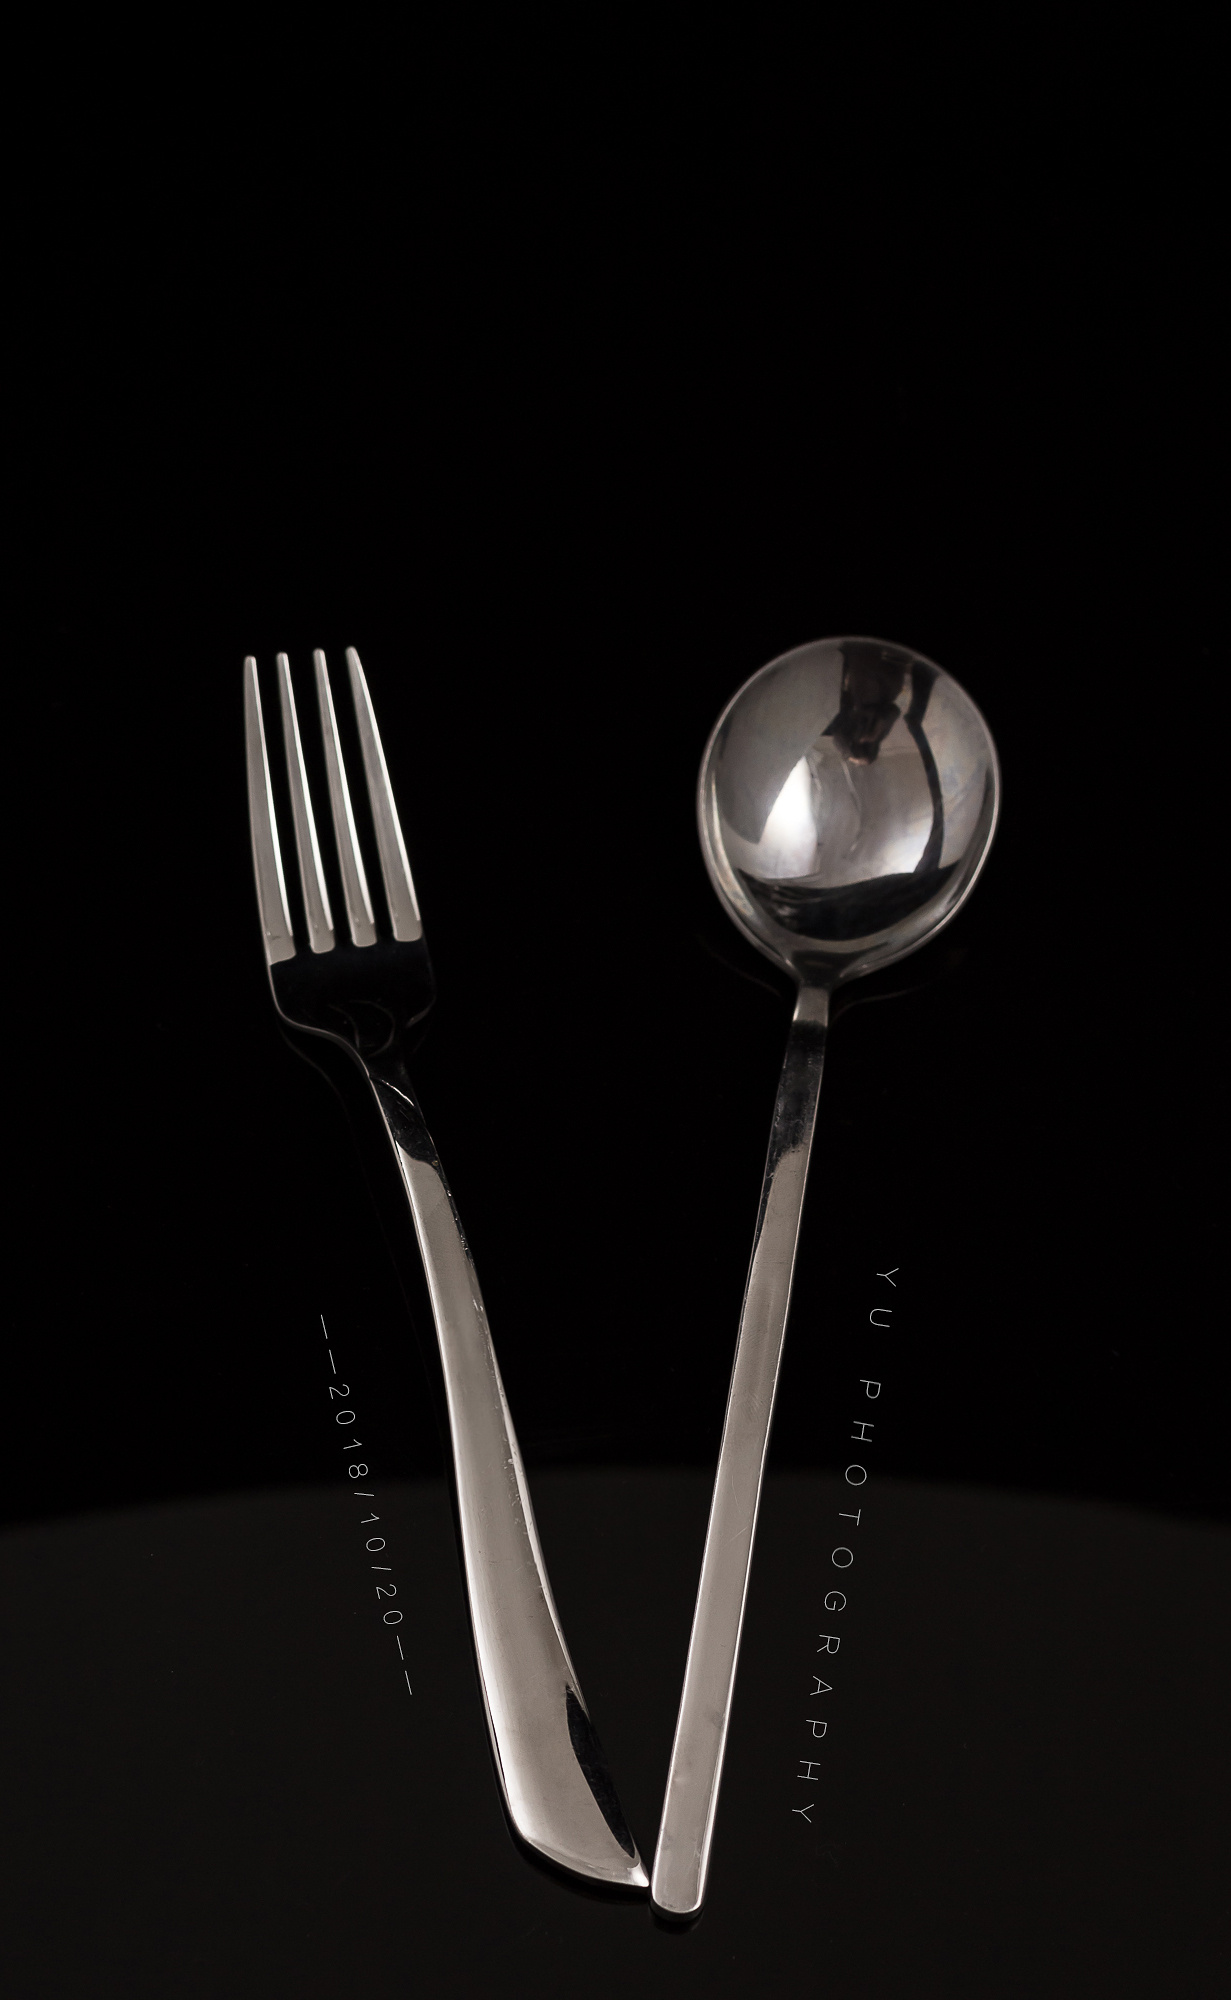 图片素材 : 叉子, 刀具, 工具, 关, 吃, 餐具, 金属叉 3648x2736 - - 972104 - 素材中国, 高清壁纸 ...